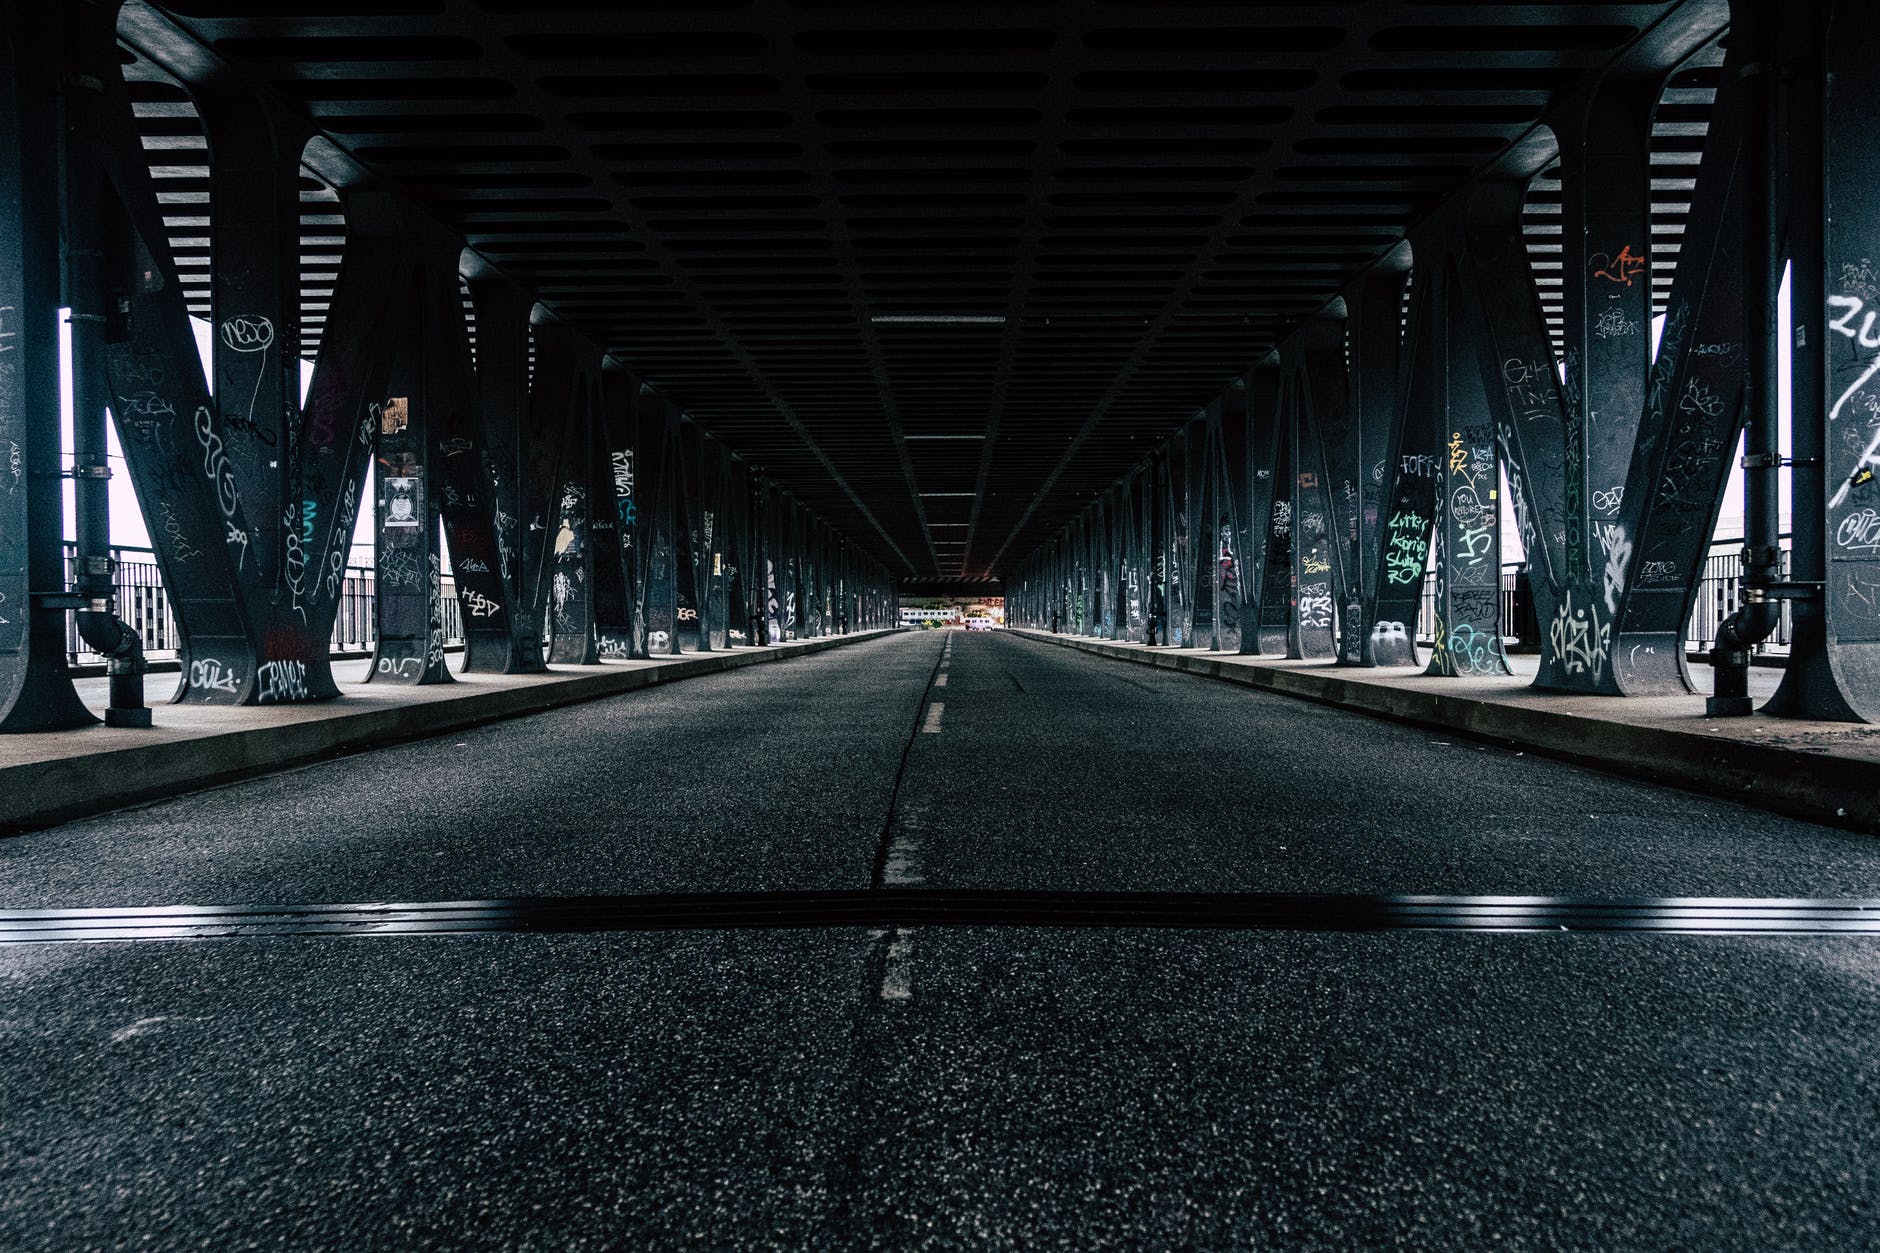 Wir haben angefangen, unter einer Brücke zu leben. | Quelle: Pexels